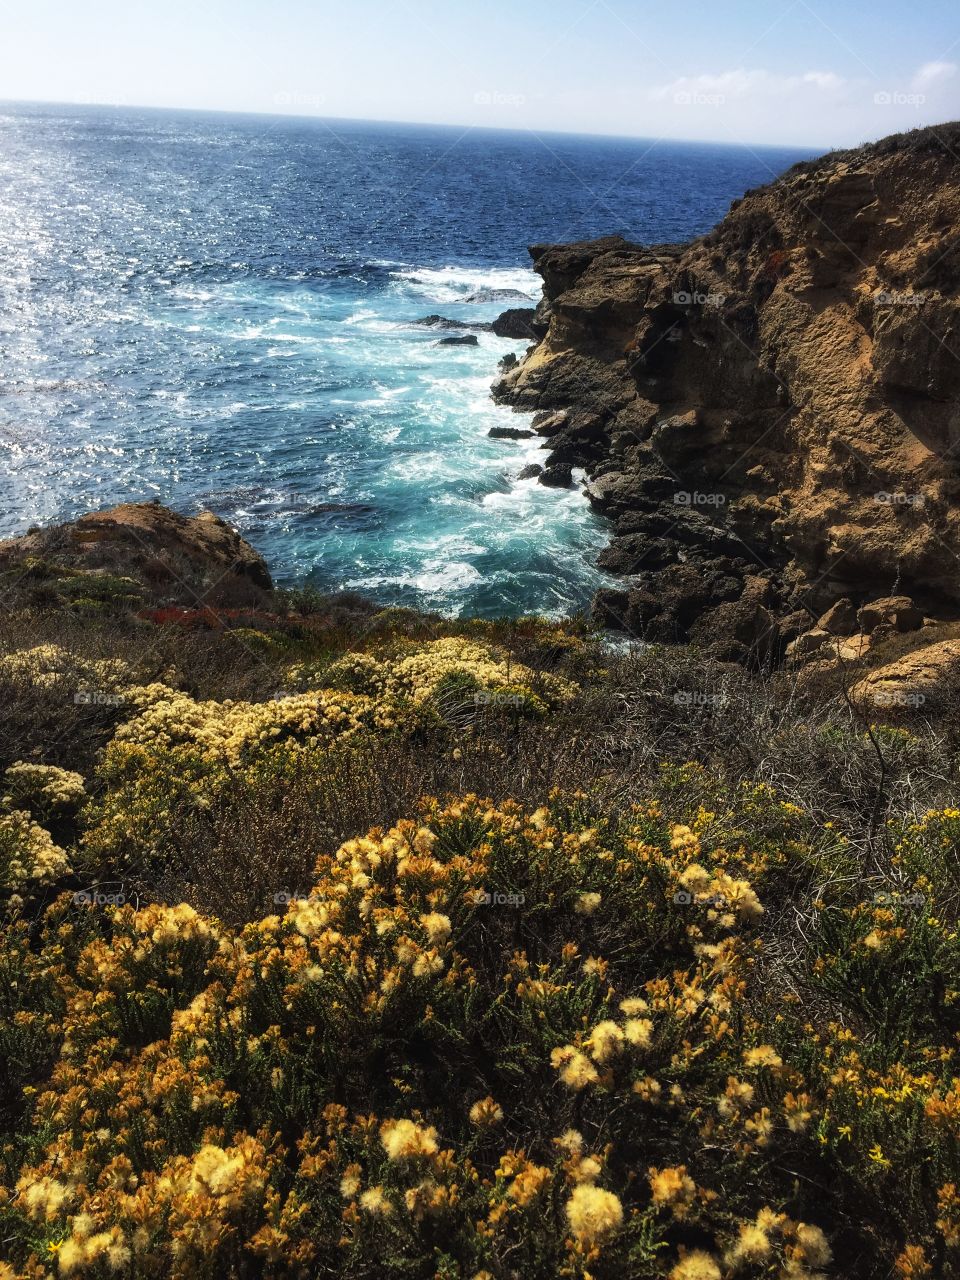 Point Lobos October